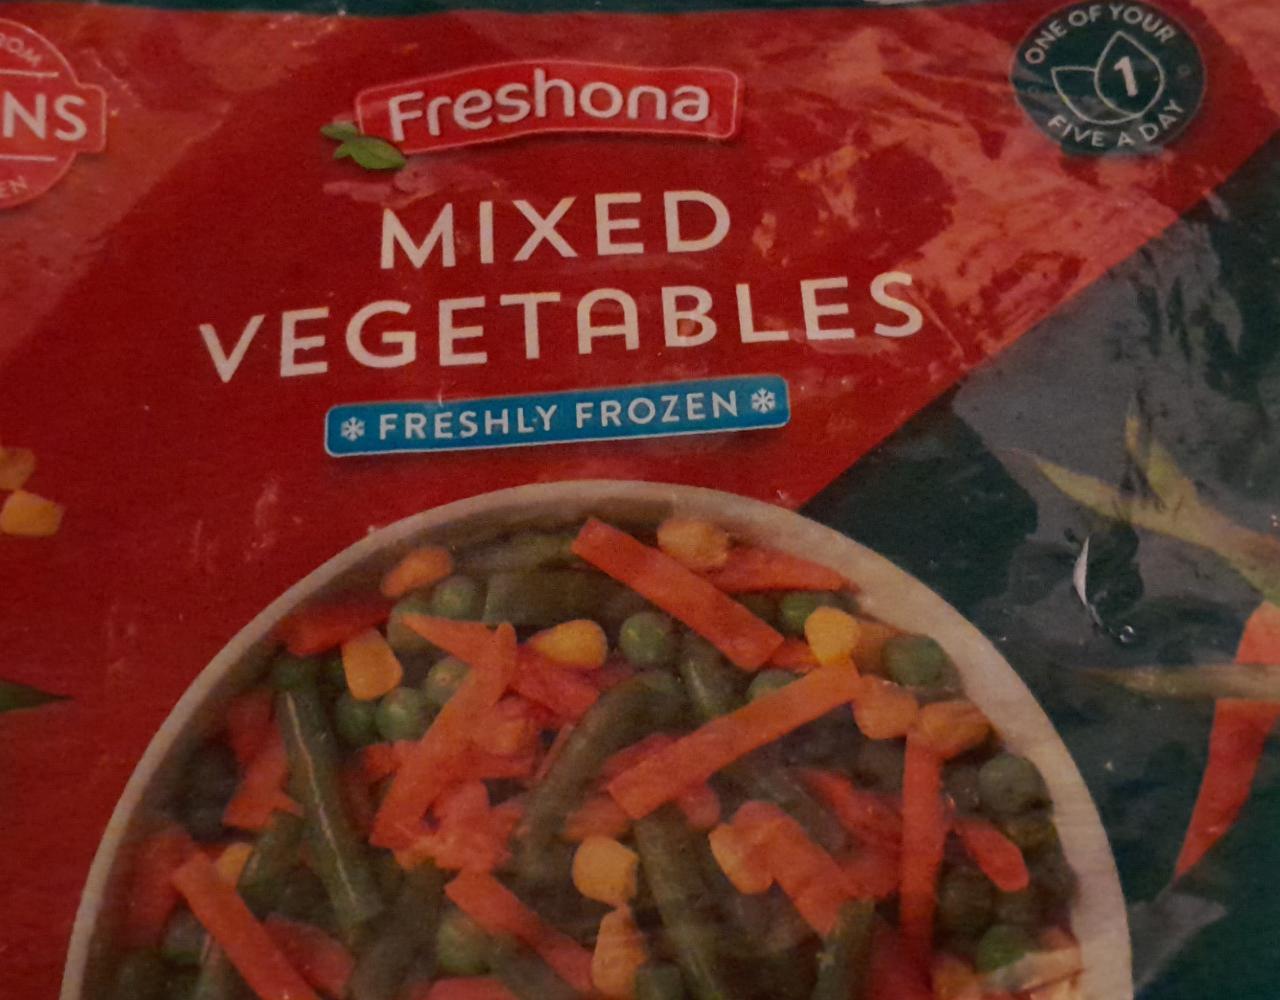 Zdjęcia - Mixed vegetables Freshona